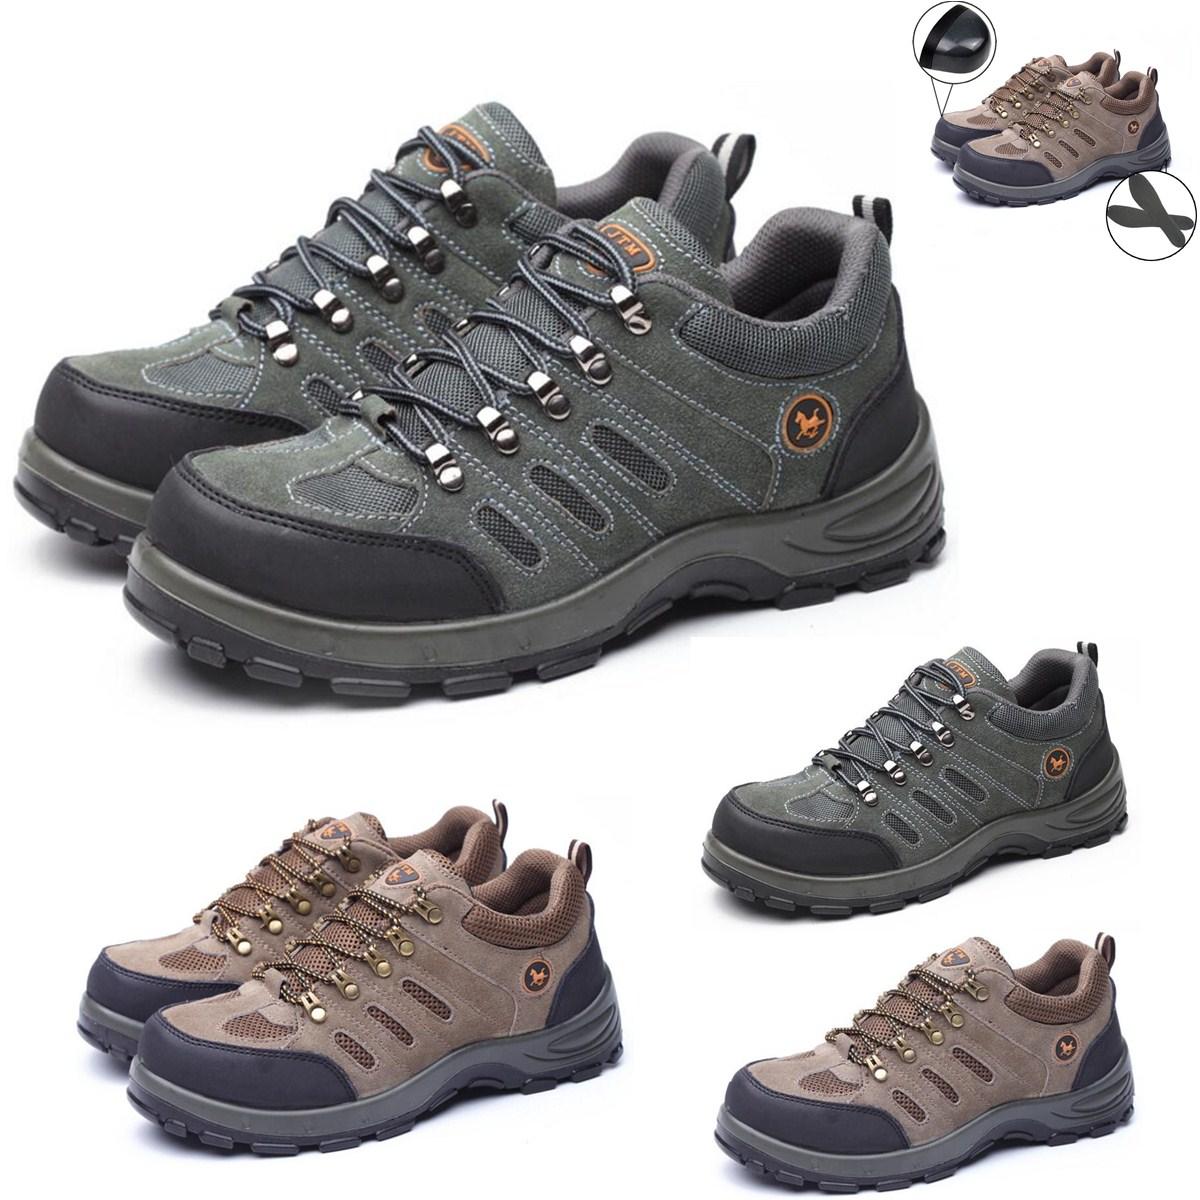 Chaussures de sécurité pour hommes TENGOO, avec embout en acier, respirantes, pour l'escalade, la randonnée et le travail en extérieur.